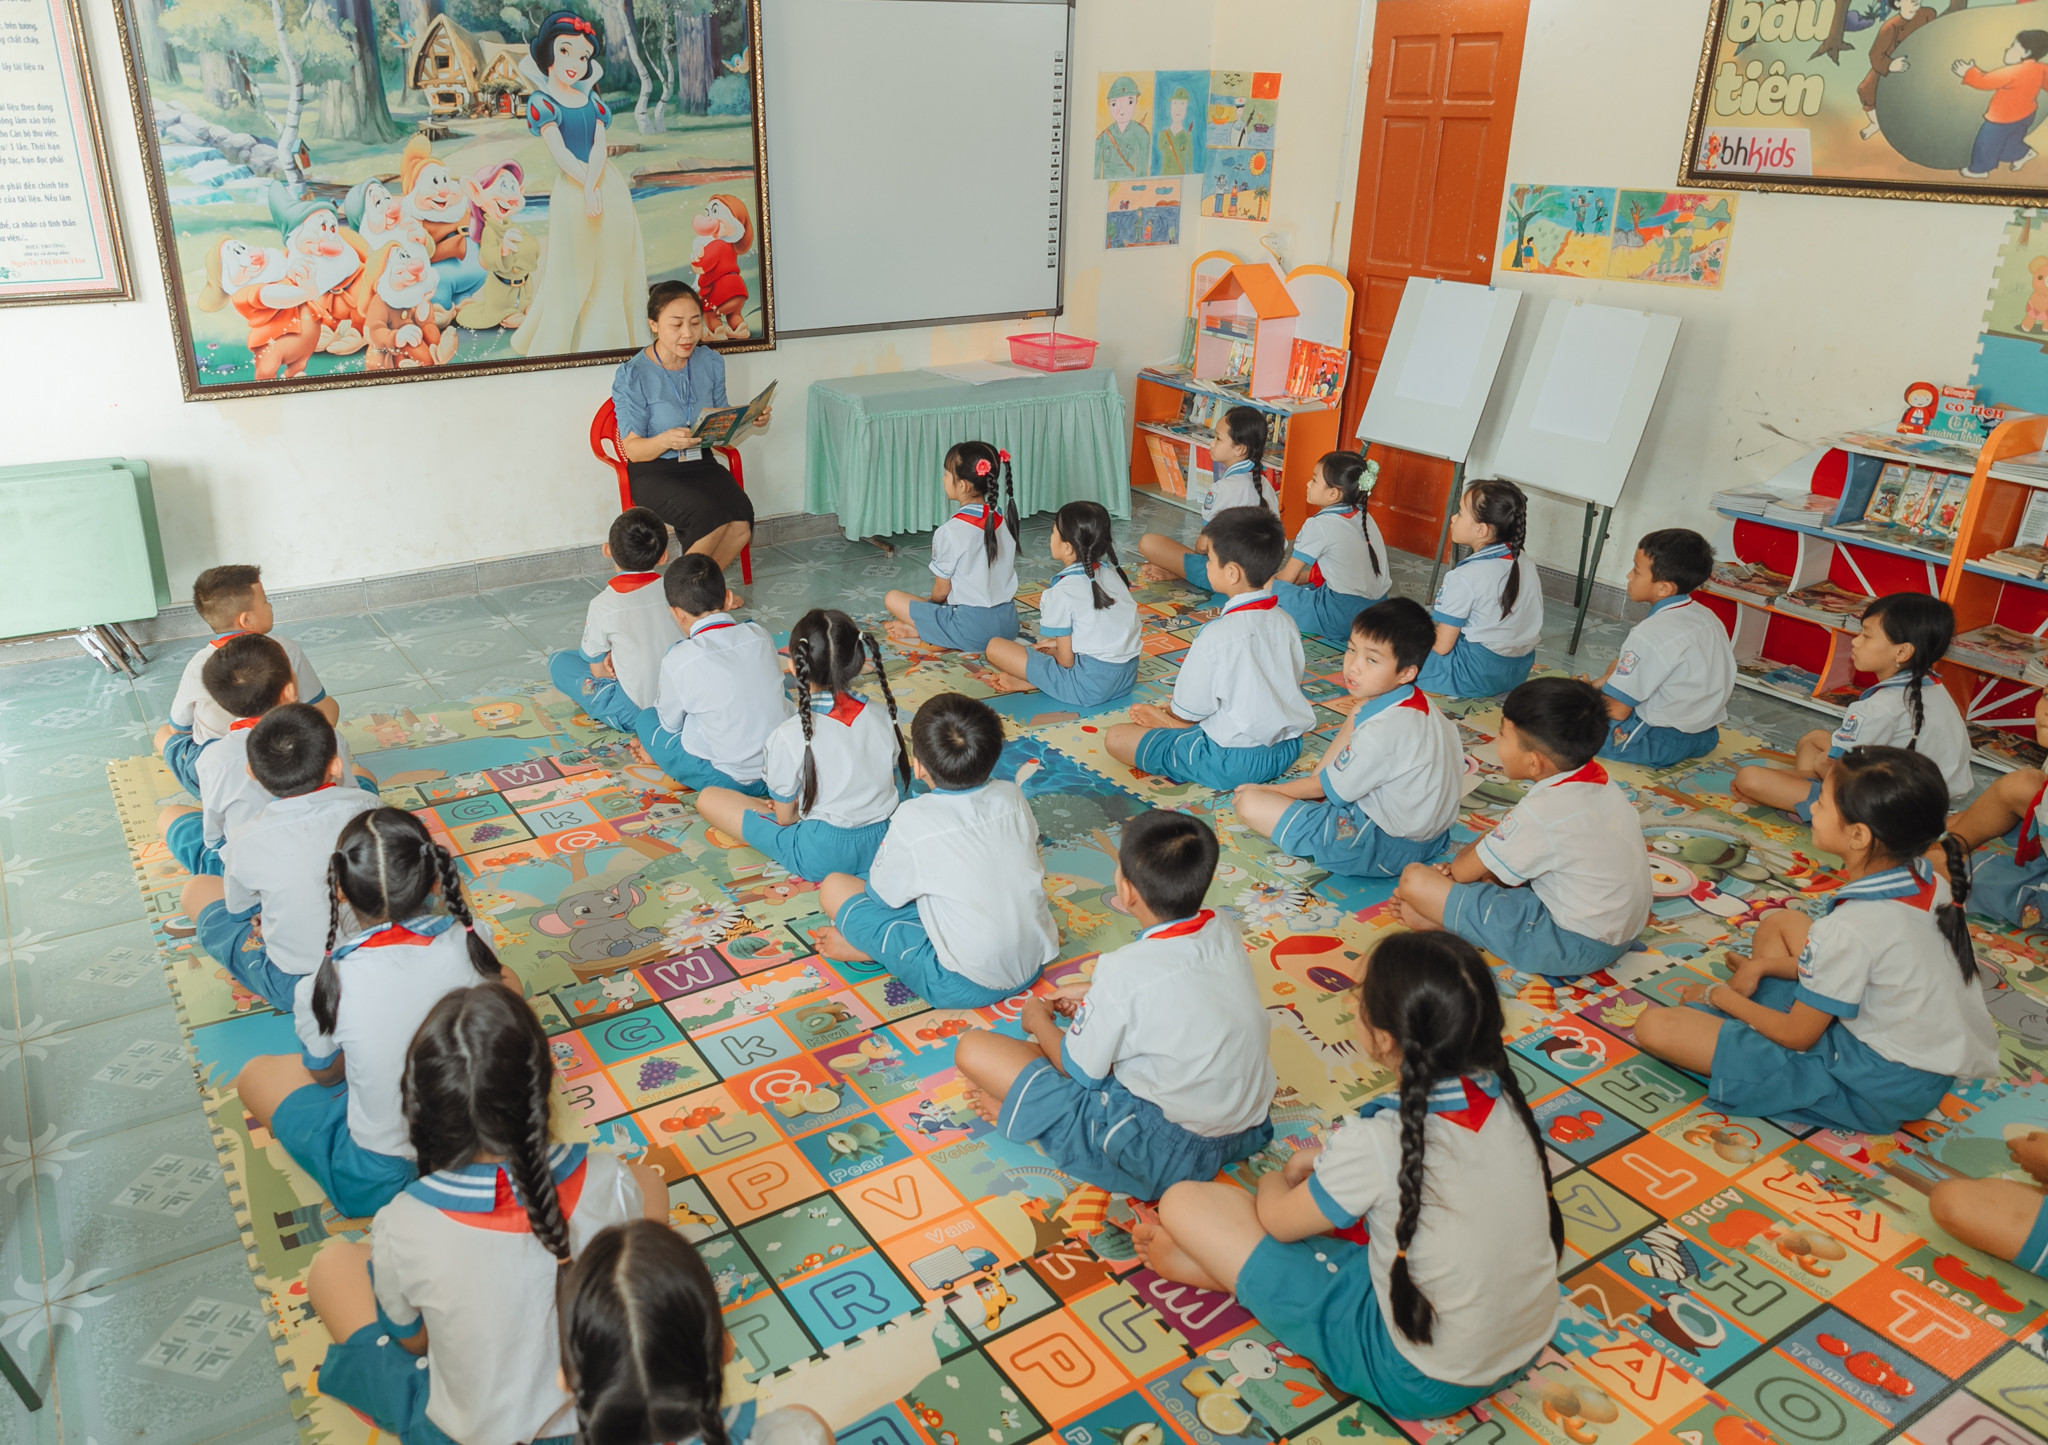 Ở các trường tiểu học miền núi Nghệ An còn gặp nhiều khó khăn nhưng đọc sách là món ăn tinh thần không thể thiếu của các em học sinh. Thư viện trường học trở thành một hoạt động không thể thiếu trong mỗi giờ ra chơi hay đầu giờ và cuối giờ học của học trò nơi đây. Ảnh: Đức Anh